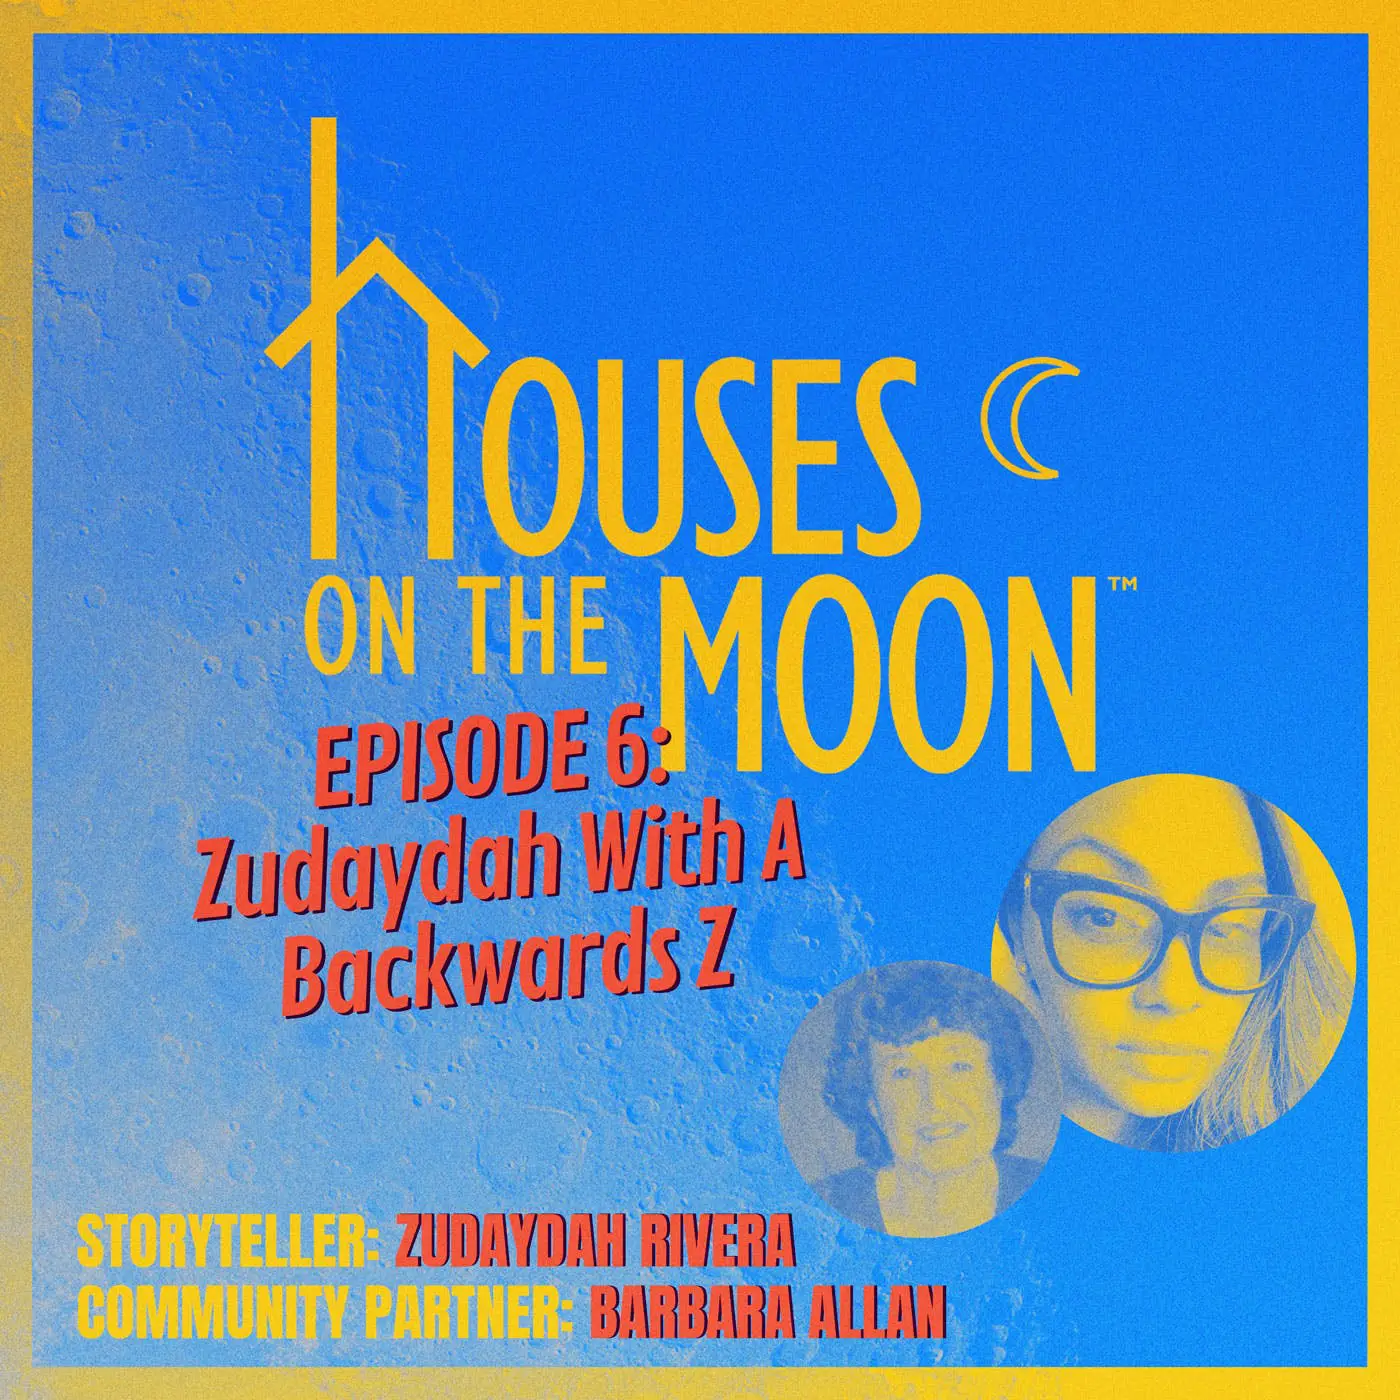 Podcast Episode #6: Zudaydah with a Backwards Z